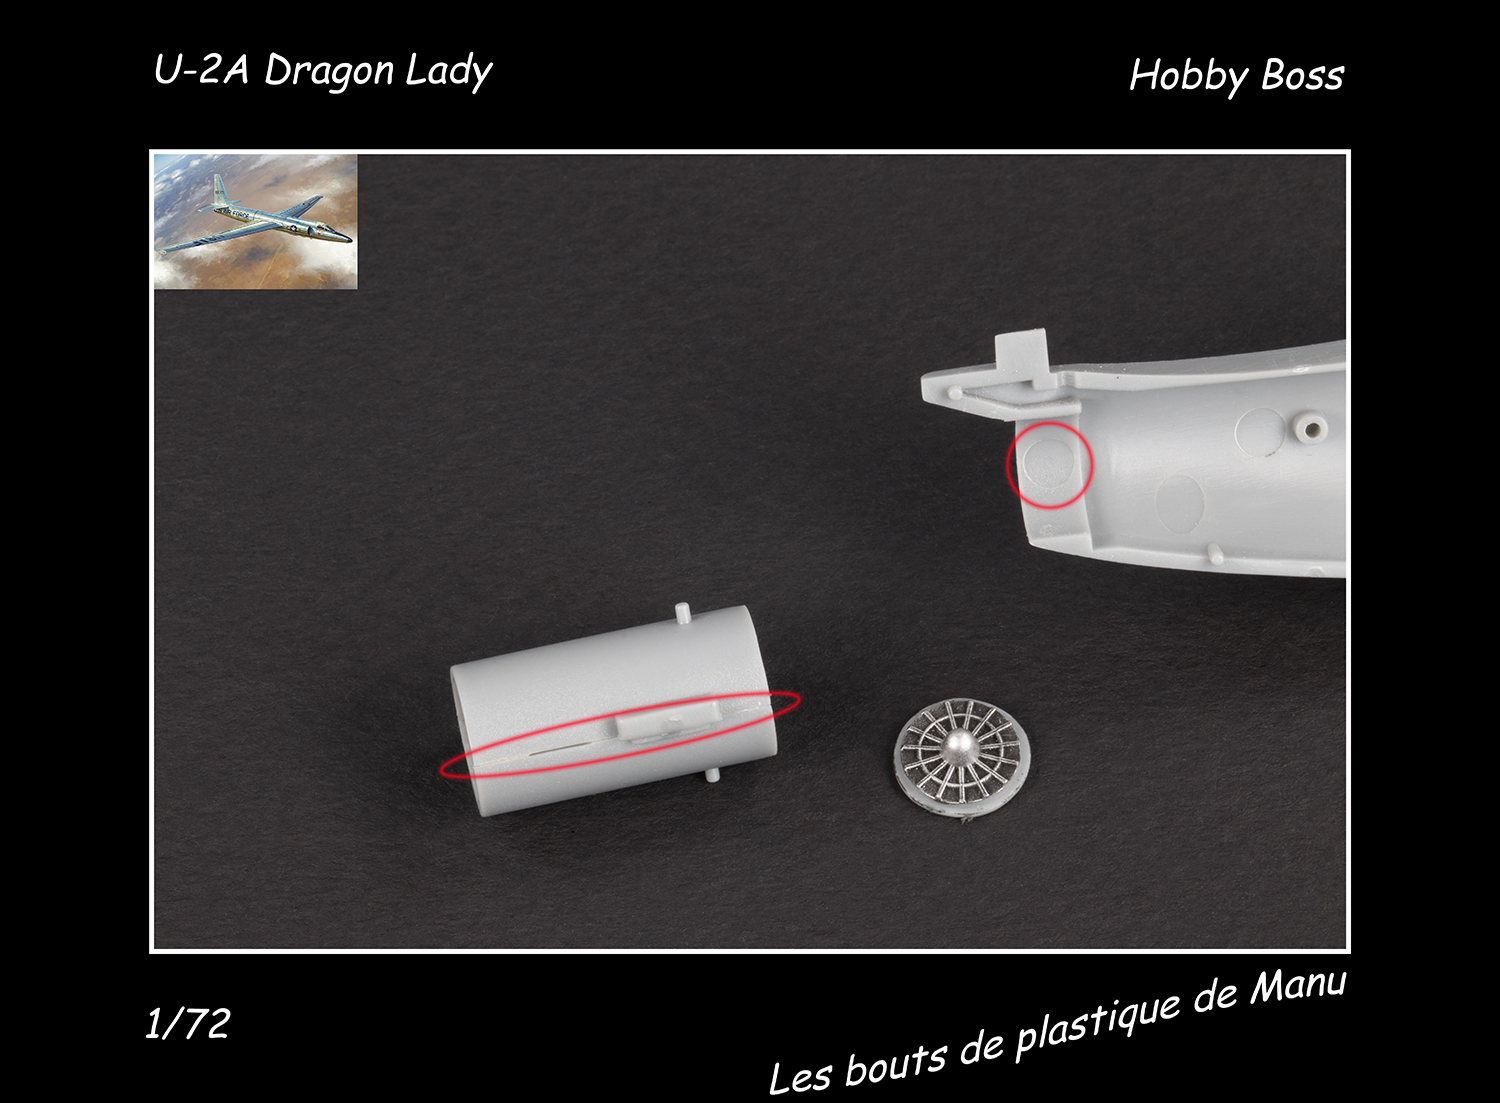 [Hobby Boss] U-2A Dragon Lady - Greffe sans rejet Ep4k